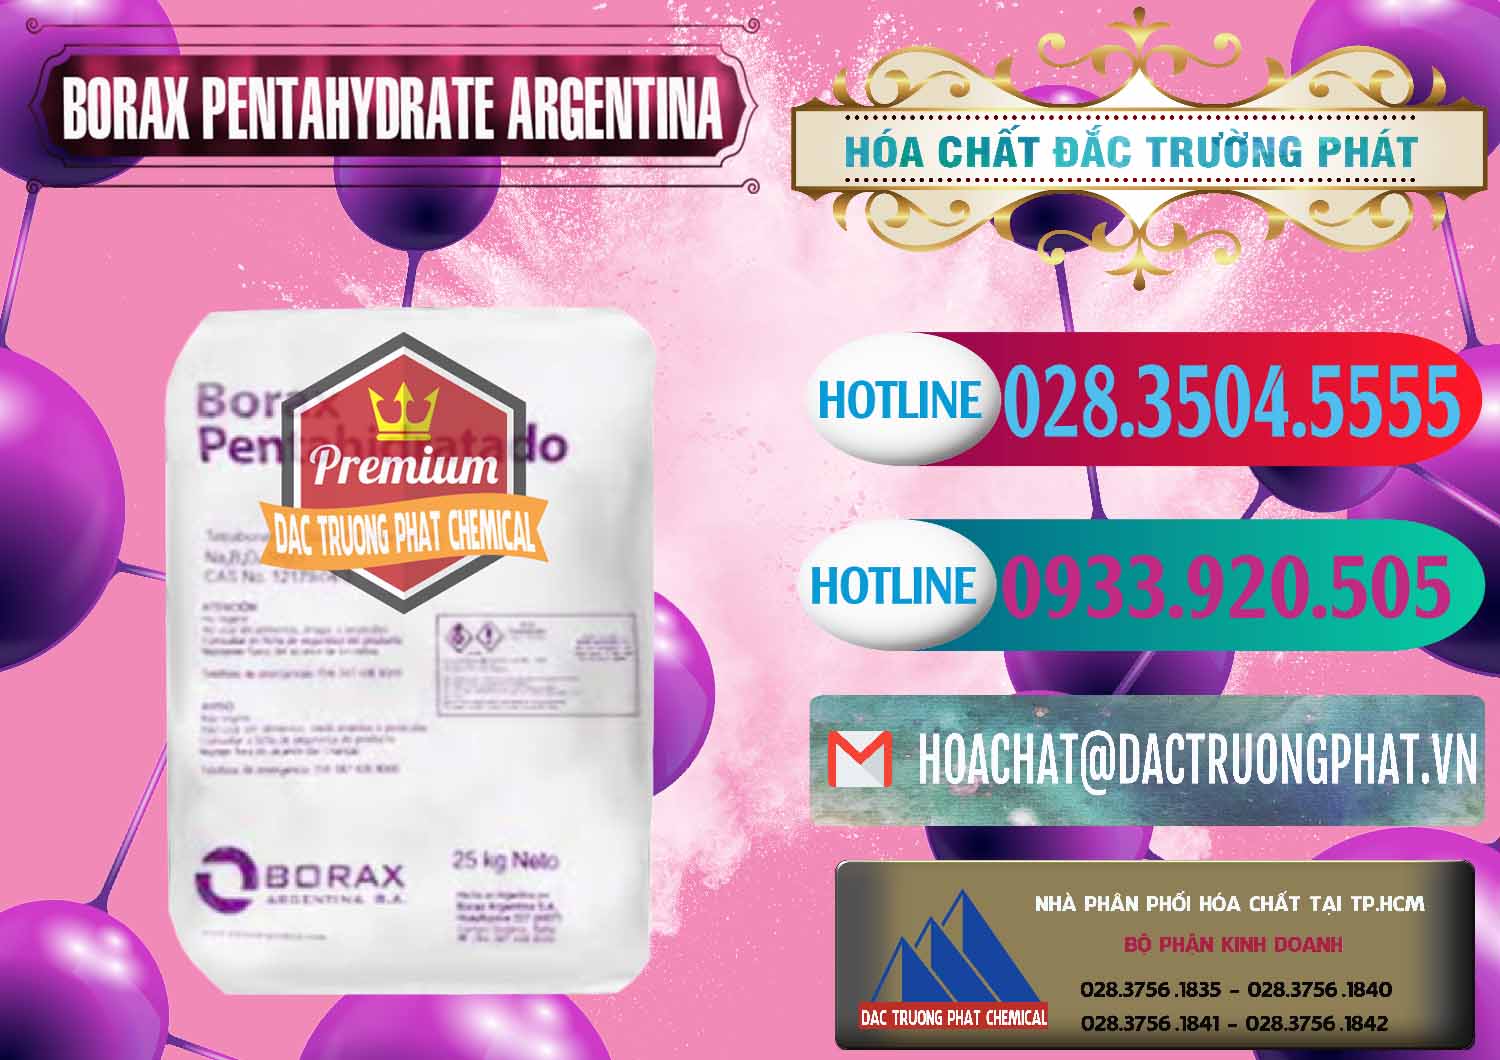 Cty chuyên cung ứng và bán Borax Pentahydrate Argentina - 0447 - Công ty cung cấp - phân phối hóa chất tại TP.HCM - truongphat.vn